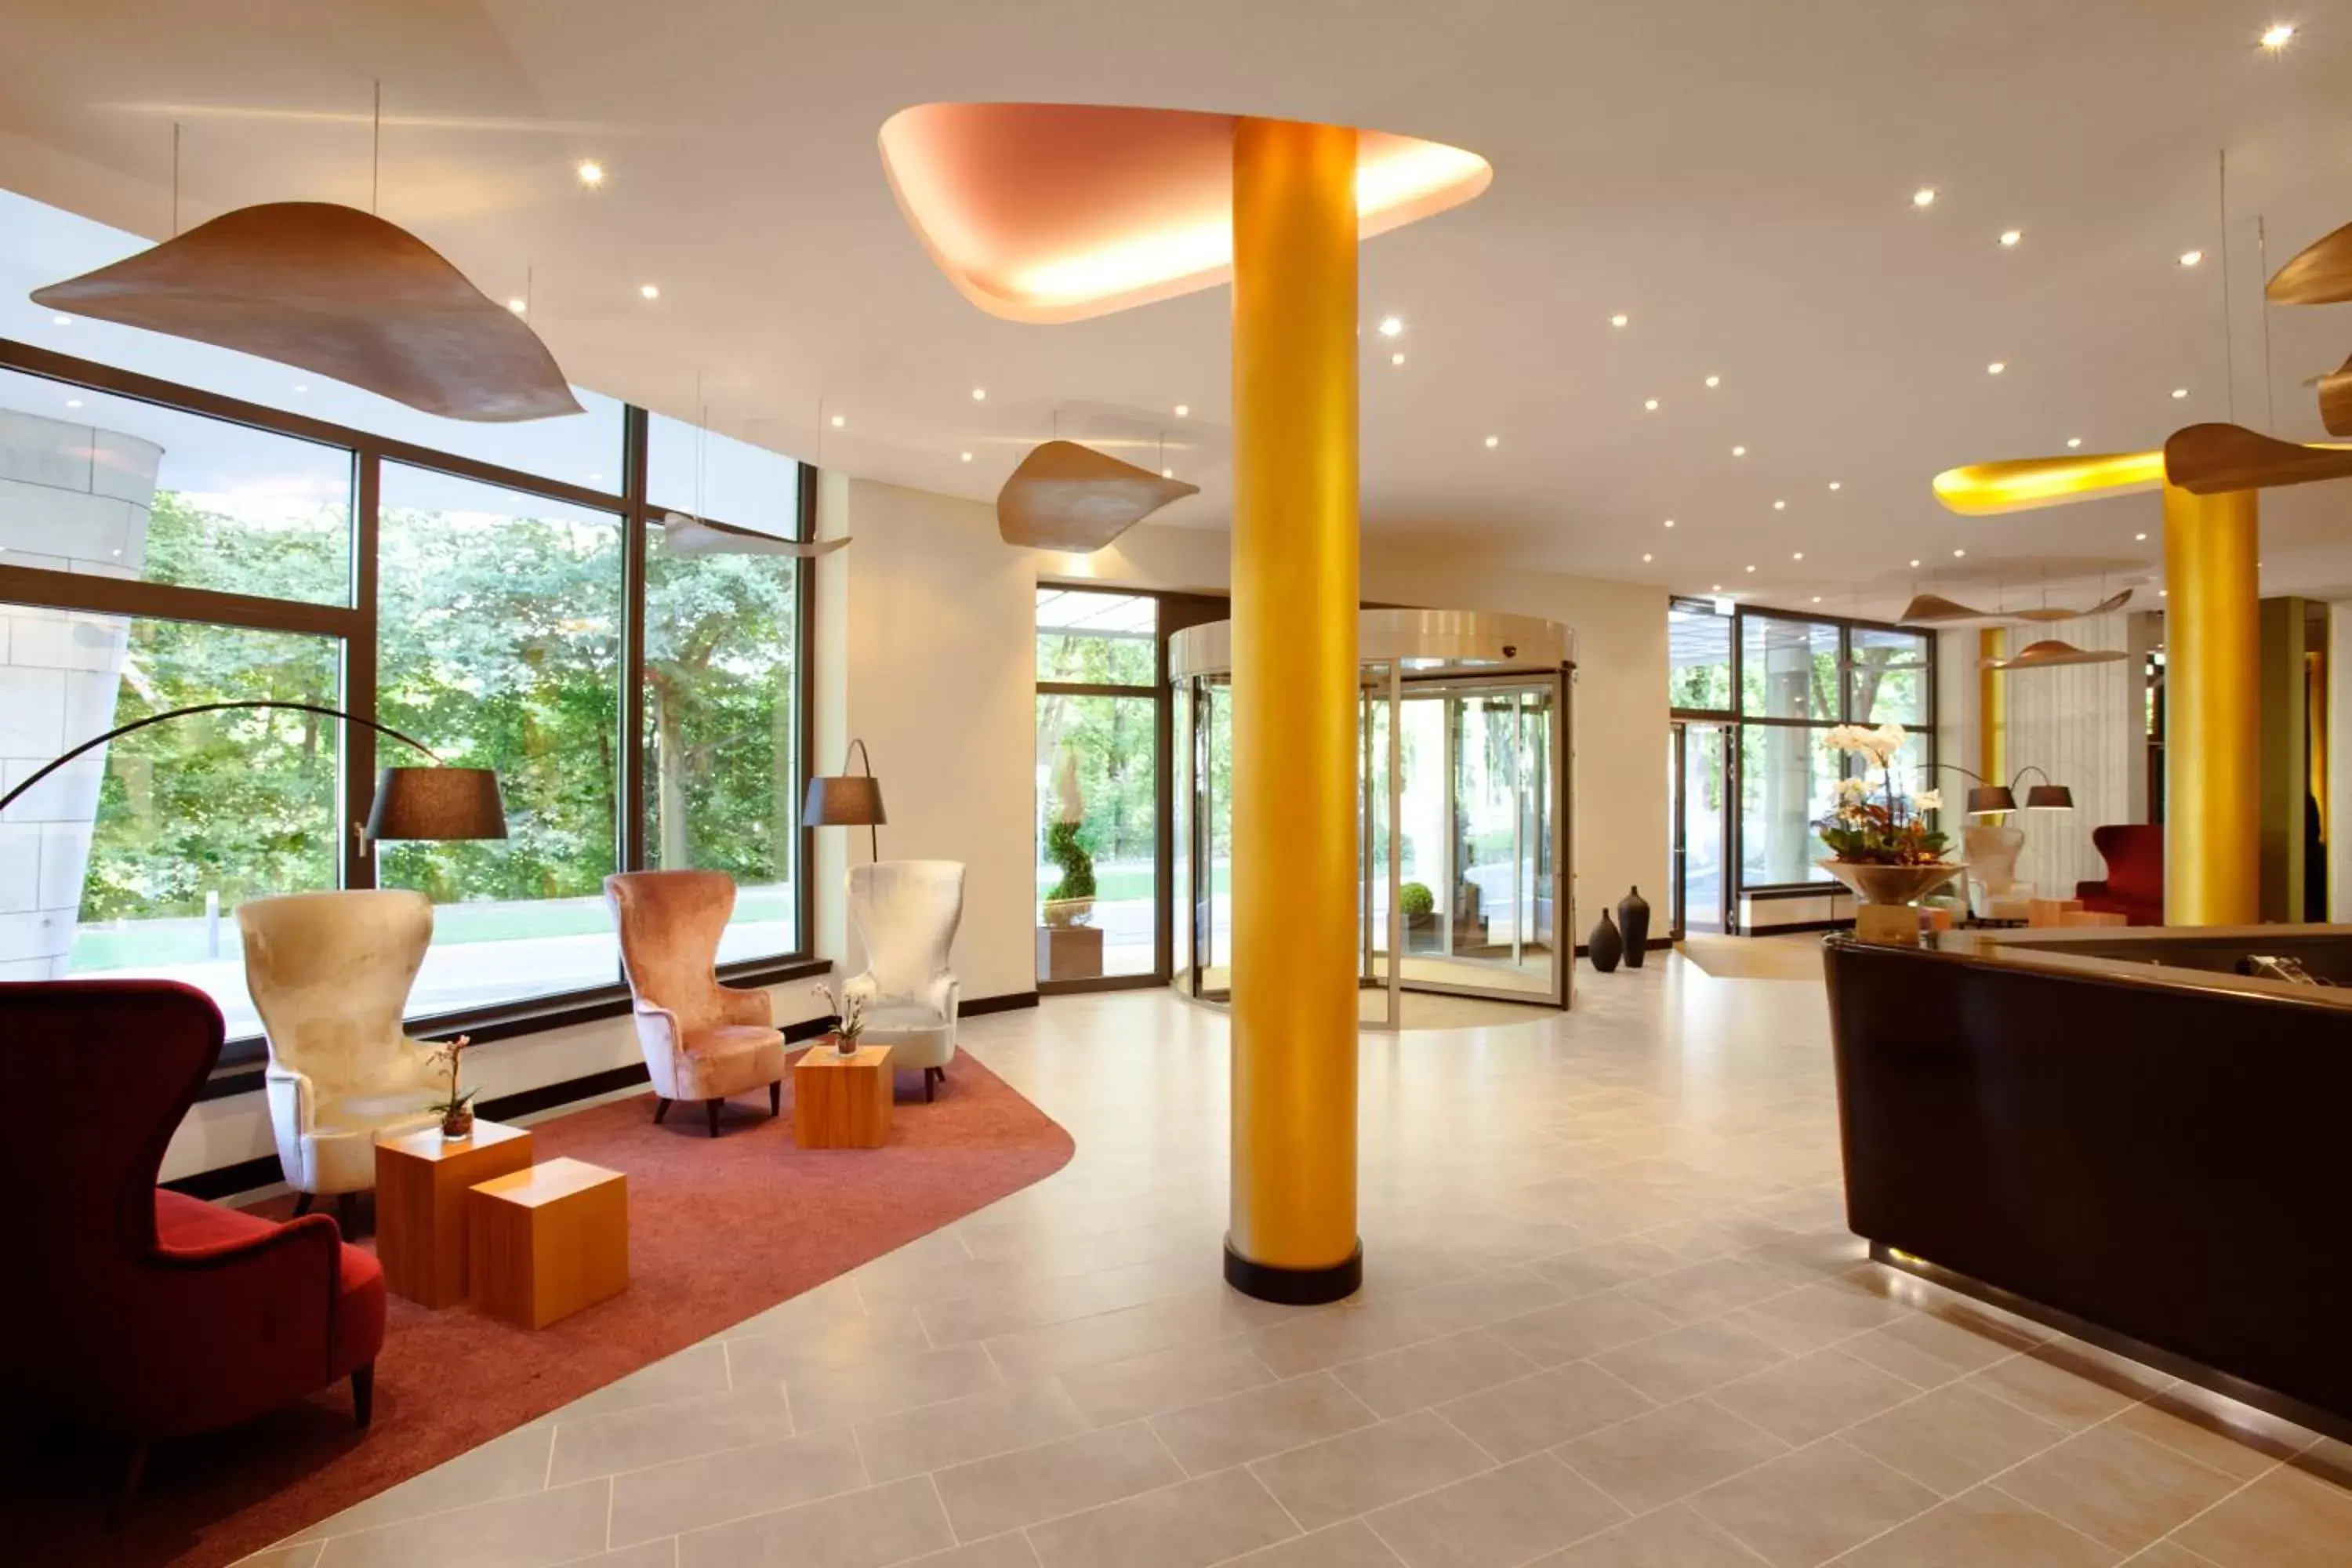 Lobby or reception, Lobby/Reception in Steigenberger Parkhotel Braunschweig